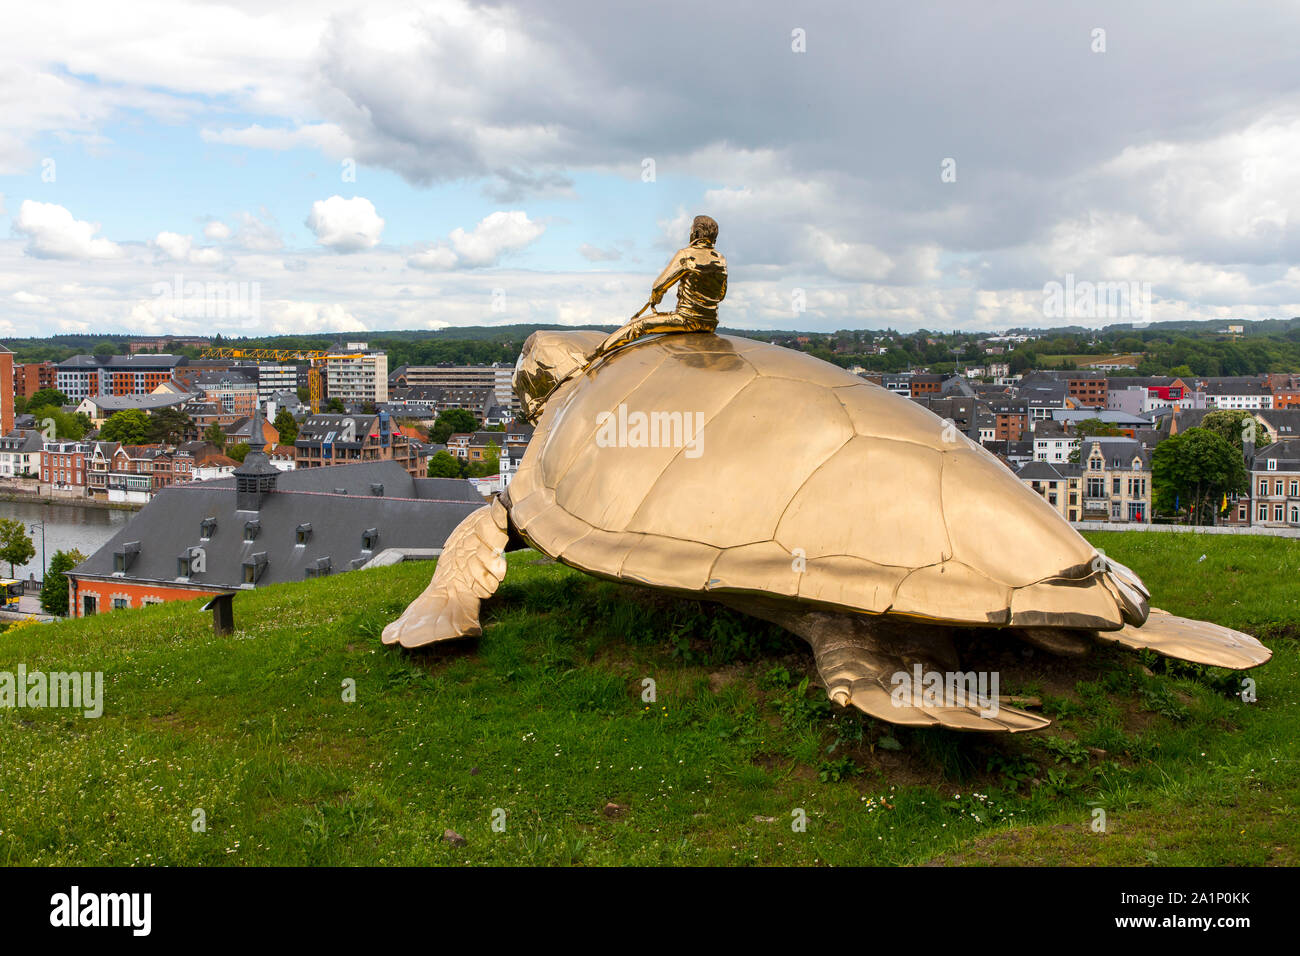 Obra de Arte buscando la utopía, por el artista Jan Fabre, en la ciudadela de Namur, Valonia, Bélgica Foto de stock